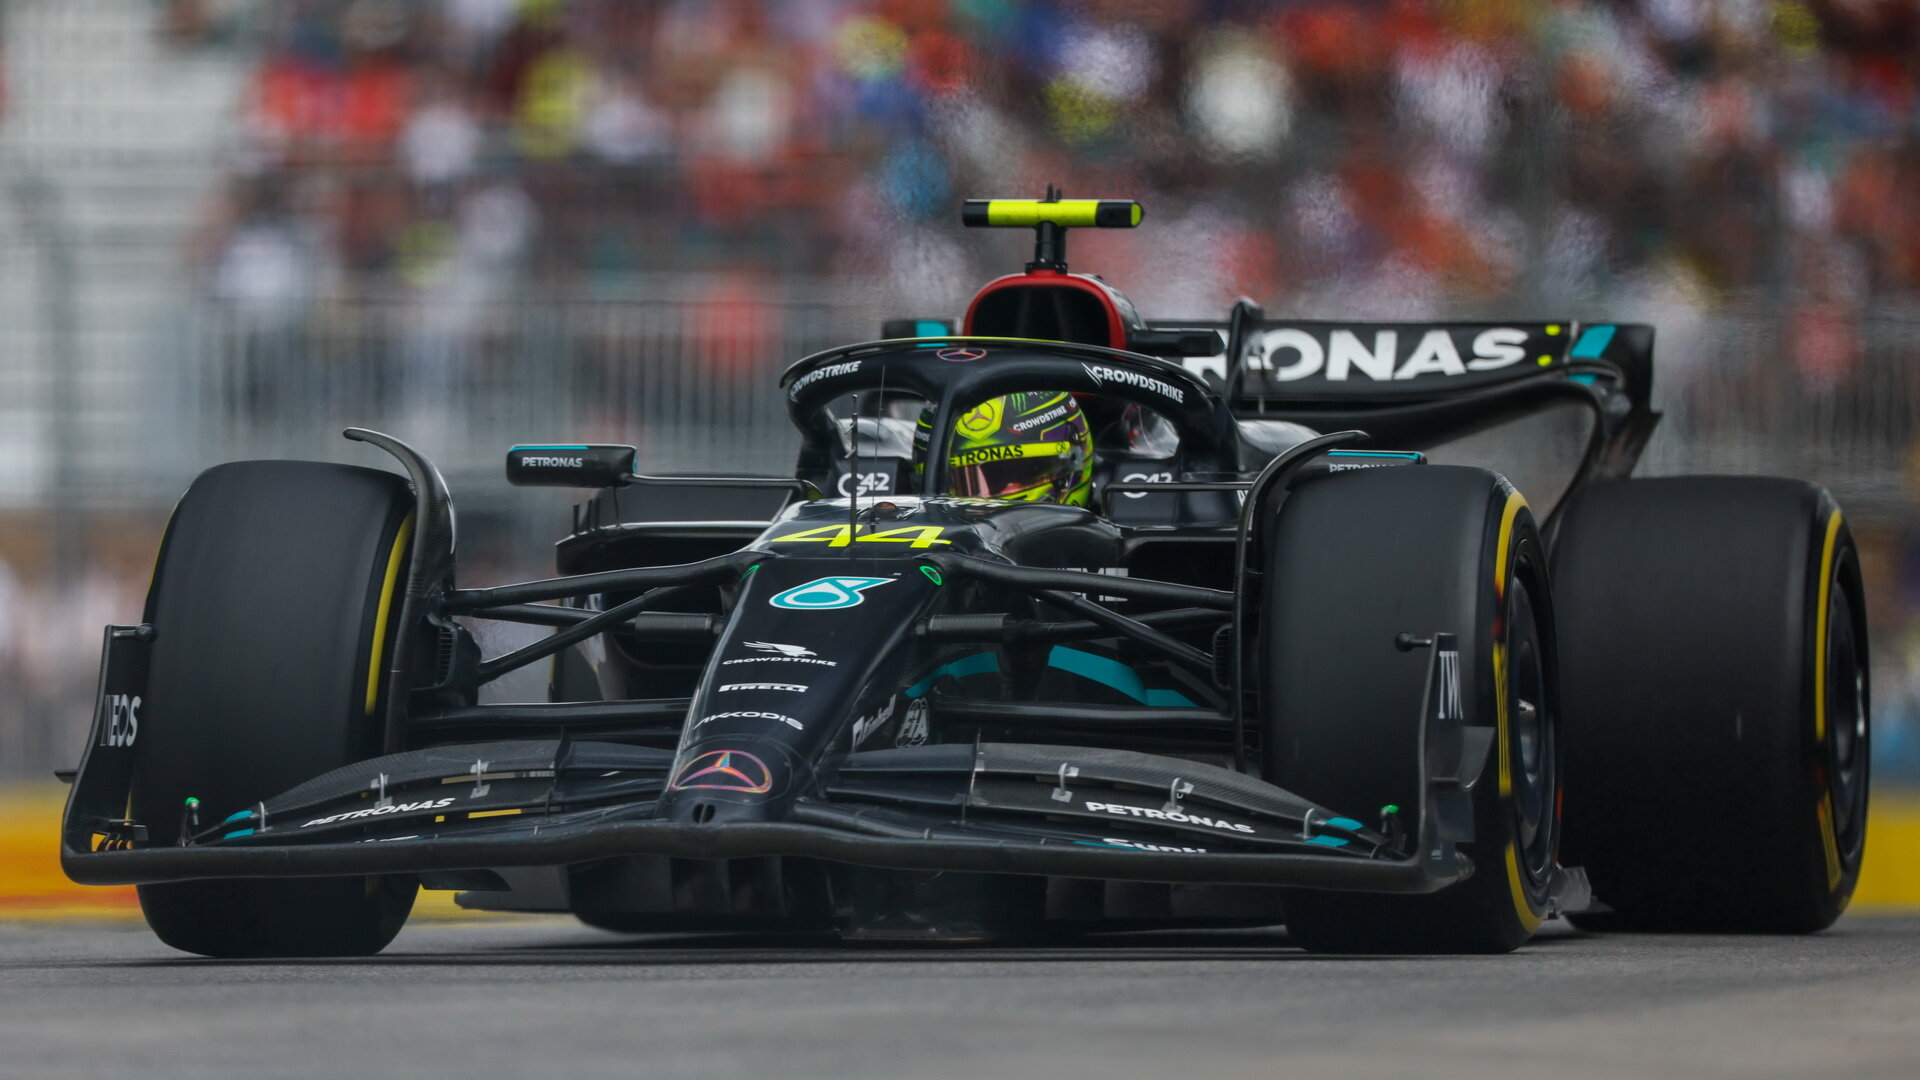 Lewis Hamilton v závodě v Kanadě